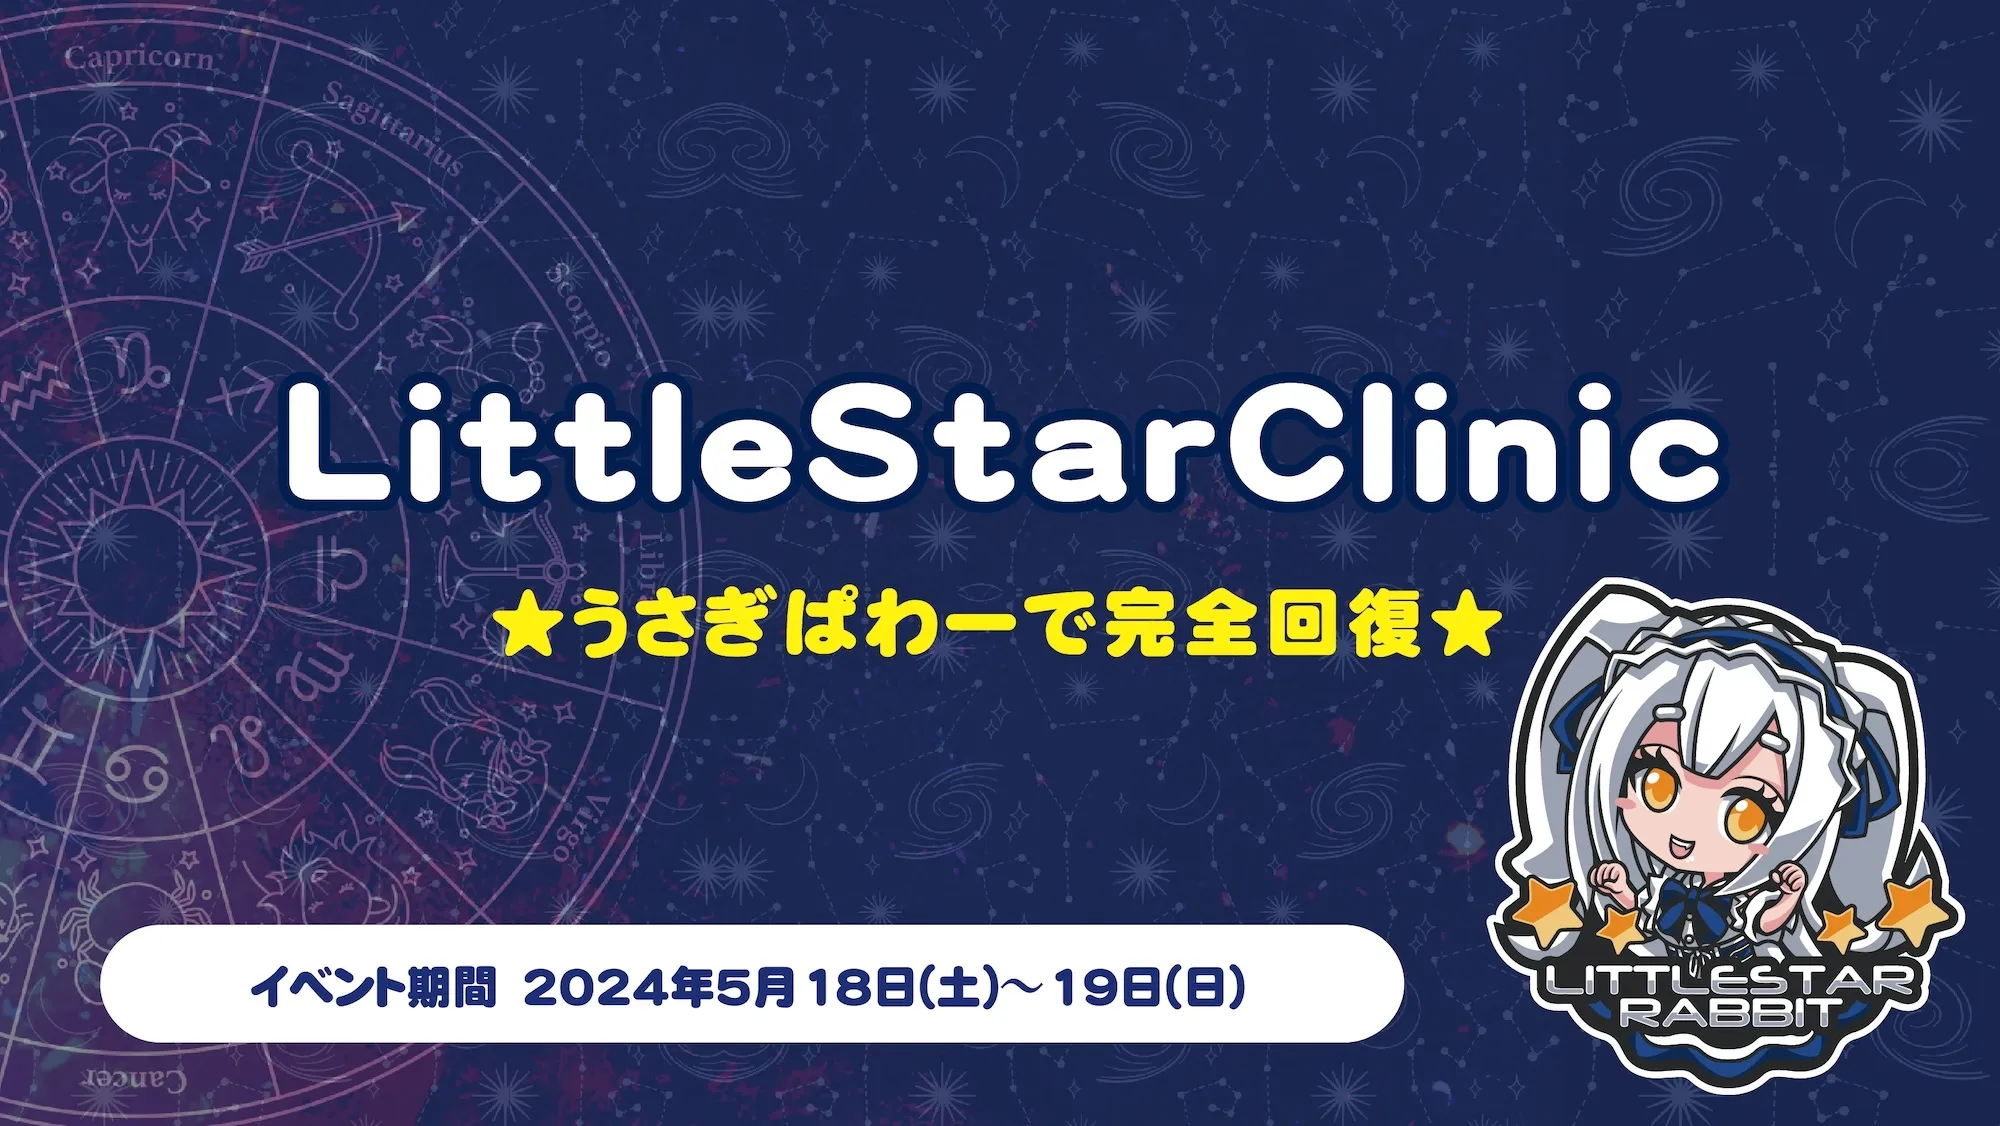 LittleStarClinic　- ★うさぎぱわーで完全回復★ - トイグループ